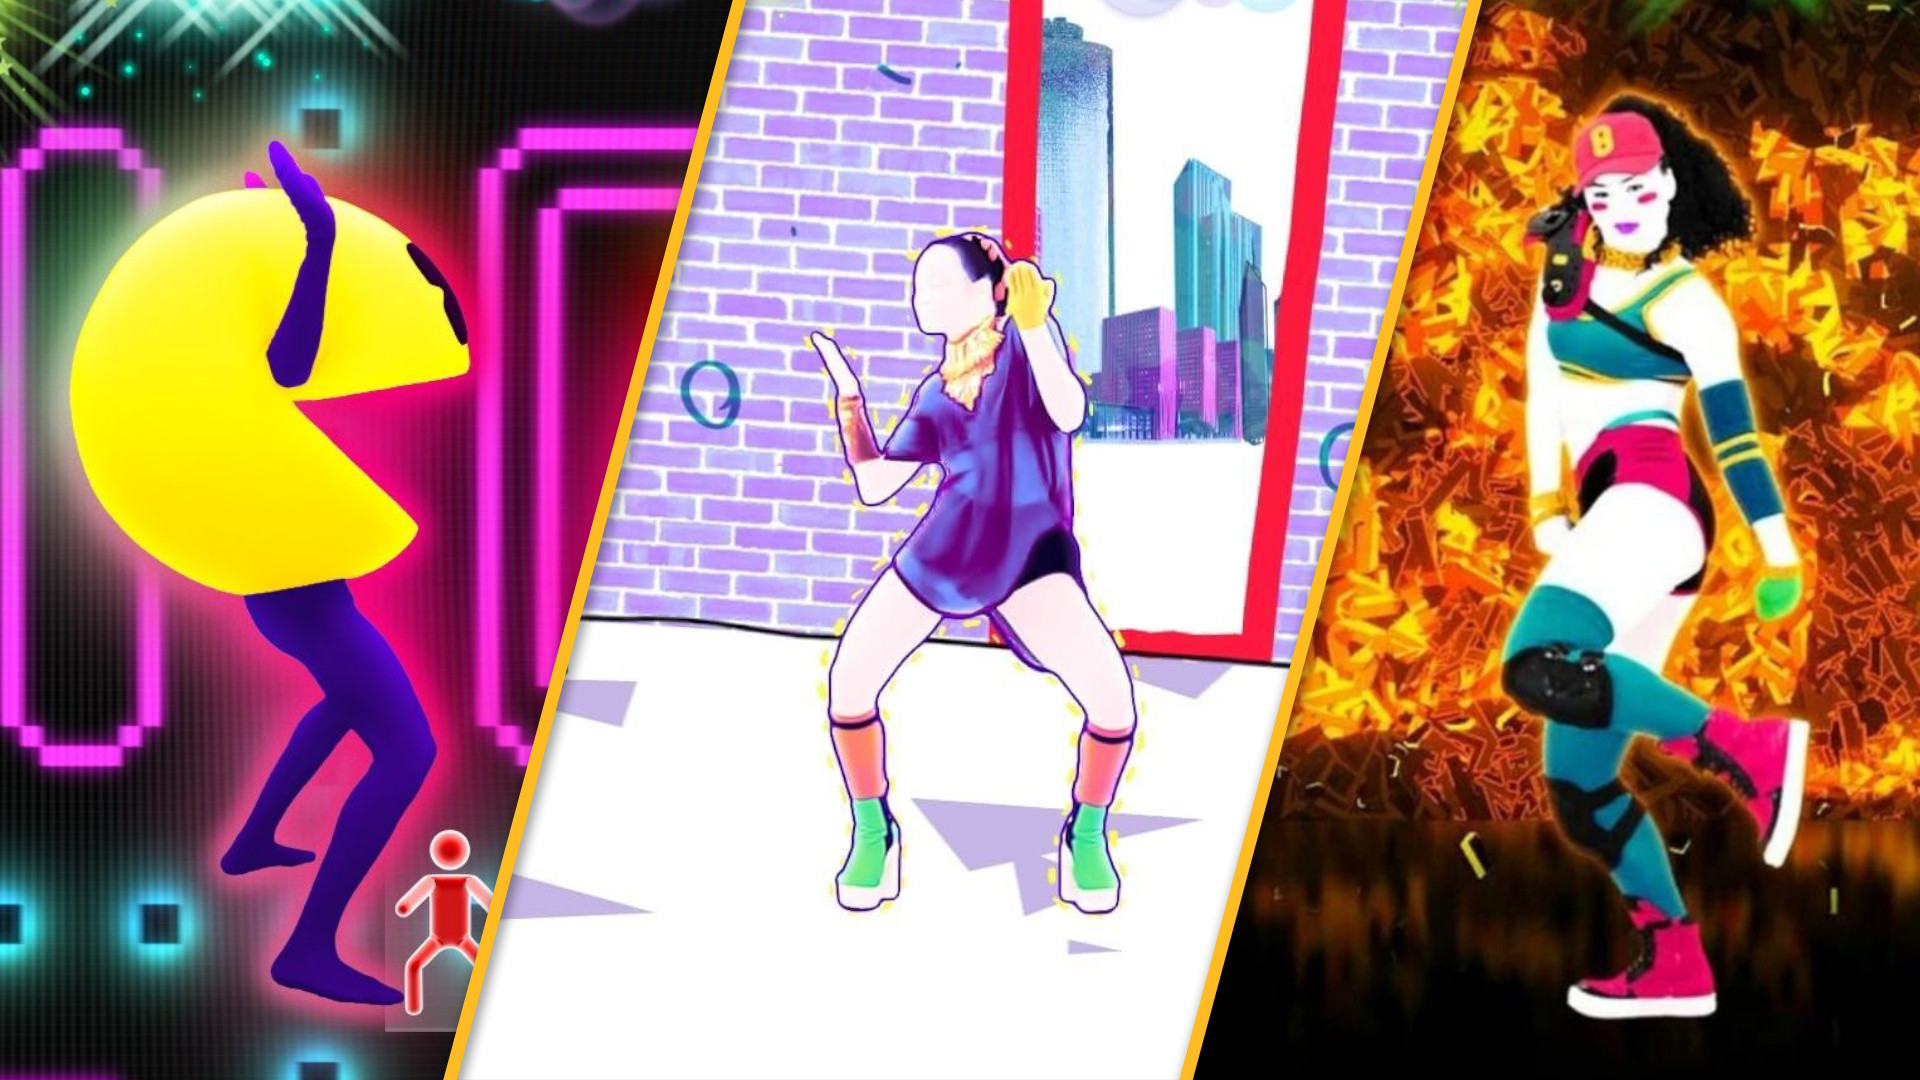 Twee graden Doelwit Inschrijven All the Just Dance games on Switch | Pocket Tactics